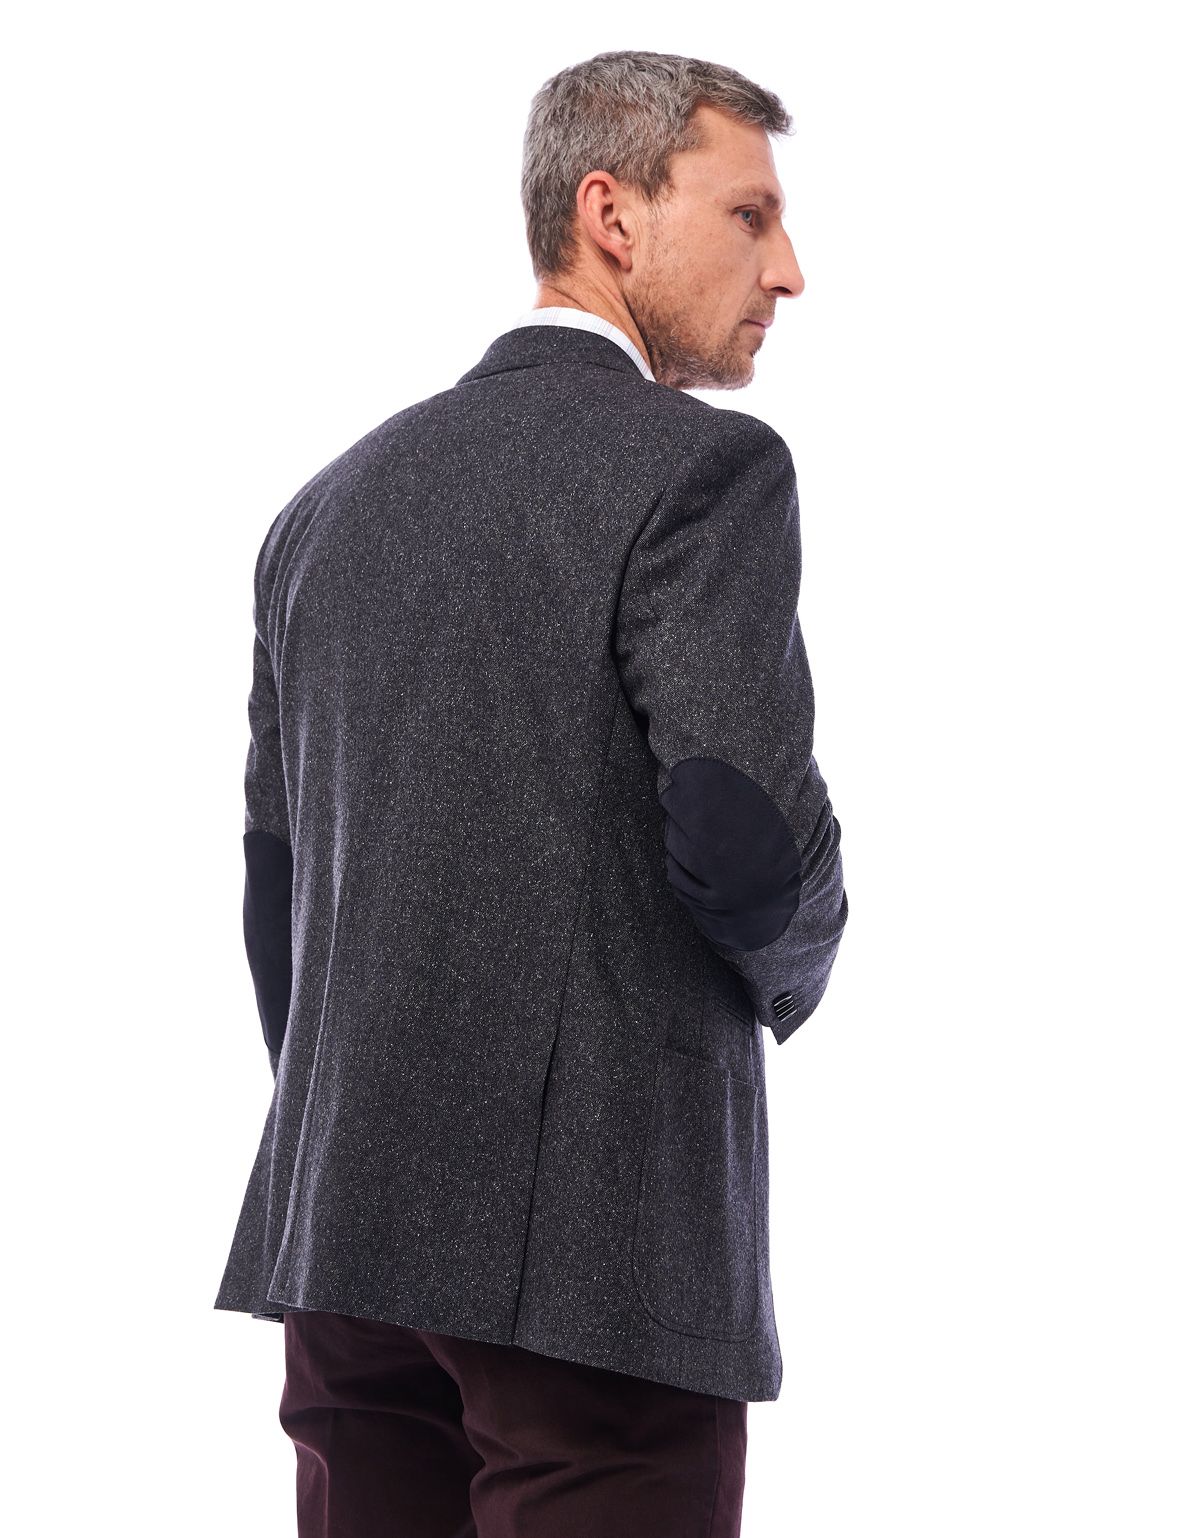 Пиджак мужской шерстяной Roy Robson с локтями из замши, modern fit | купить в интернет-магазине Olymp-Men